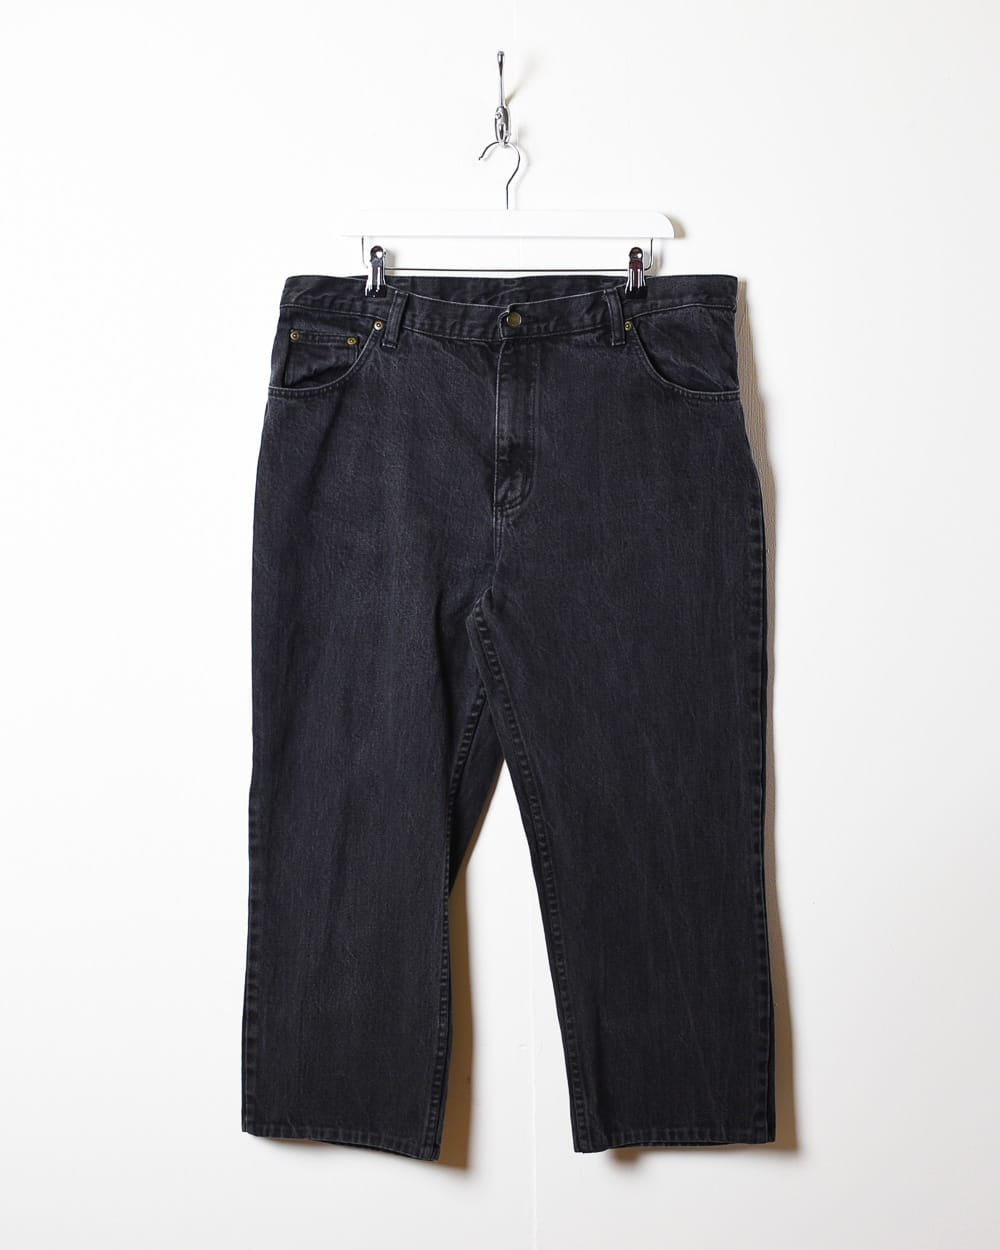 Black Wrangler Hero Jeans - W38 L25